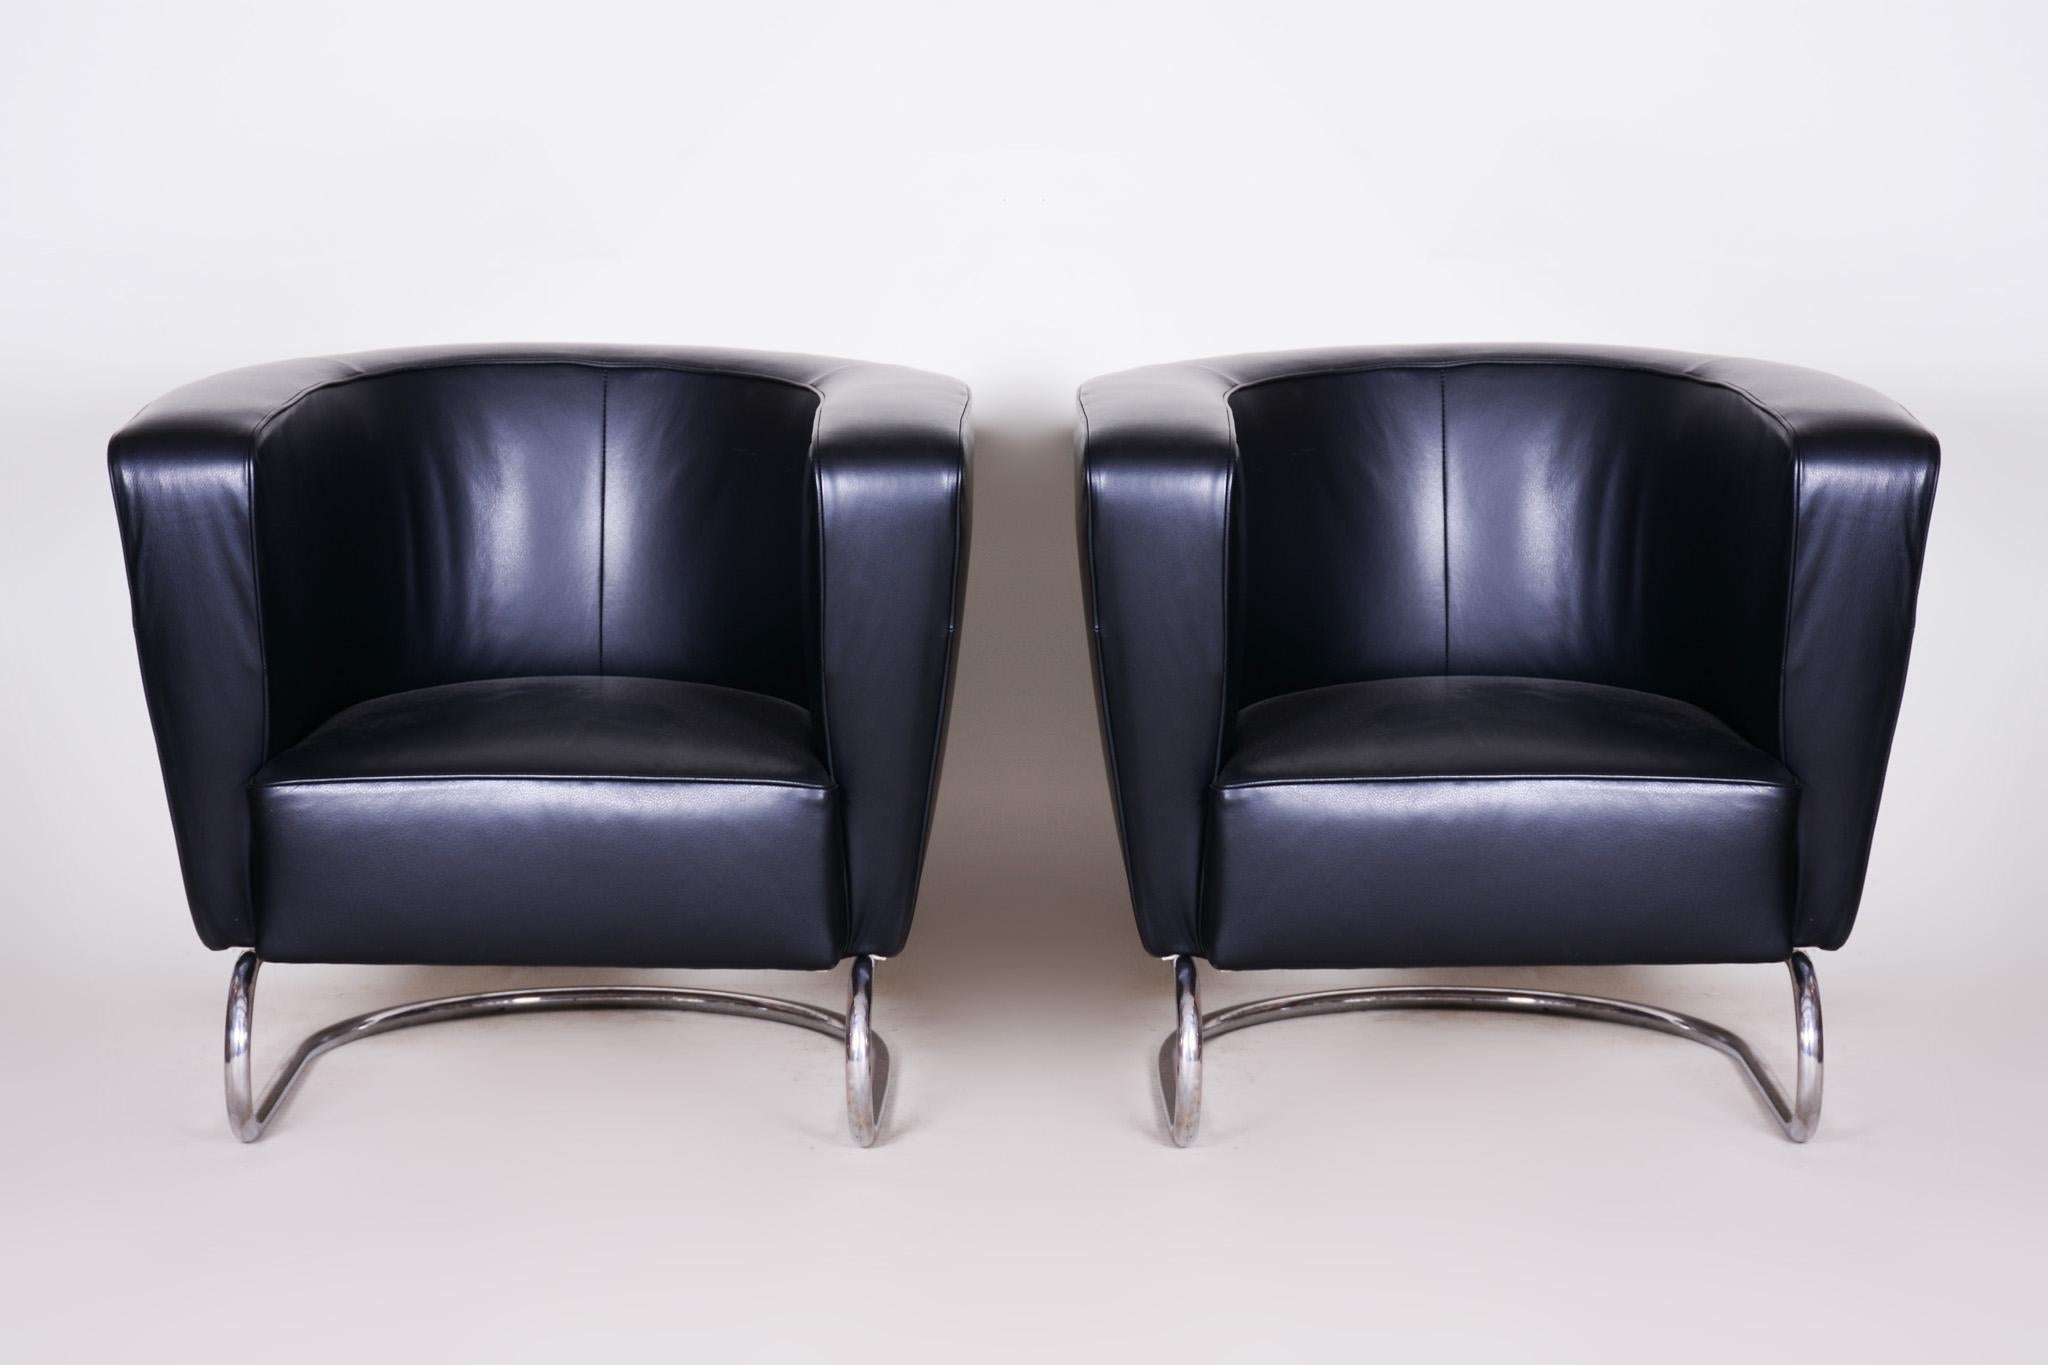 Paire de fauteuils Art Déco.
Fabrication United Arts & Crafts. Conçu par Jindřich Halabala.
Matériau : Acier chromé et cuir de haute qualité.
  